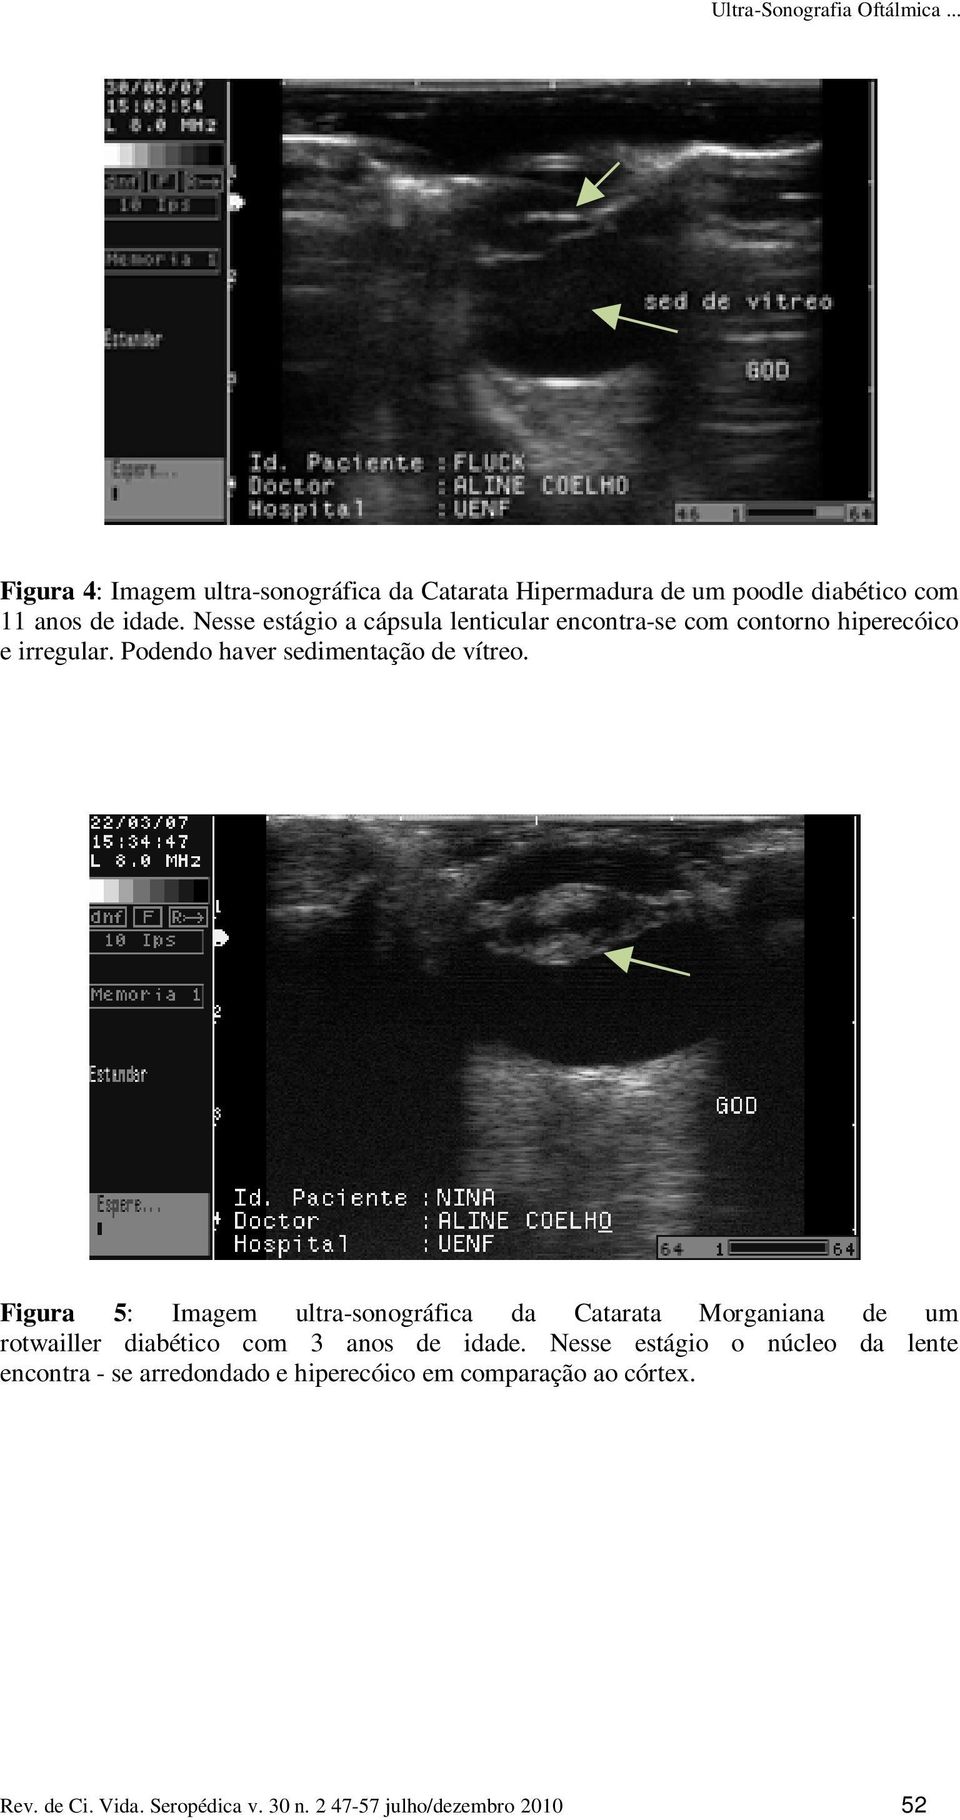 Figura 5: Imagem ultra-sonográfica da Catarata Morganiana de um rotwailler diabético com 3 anos de idade.